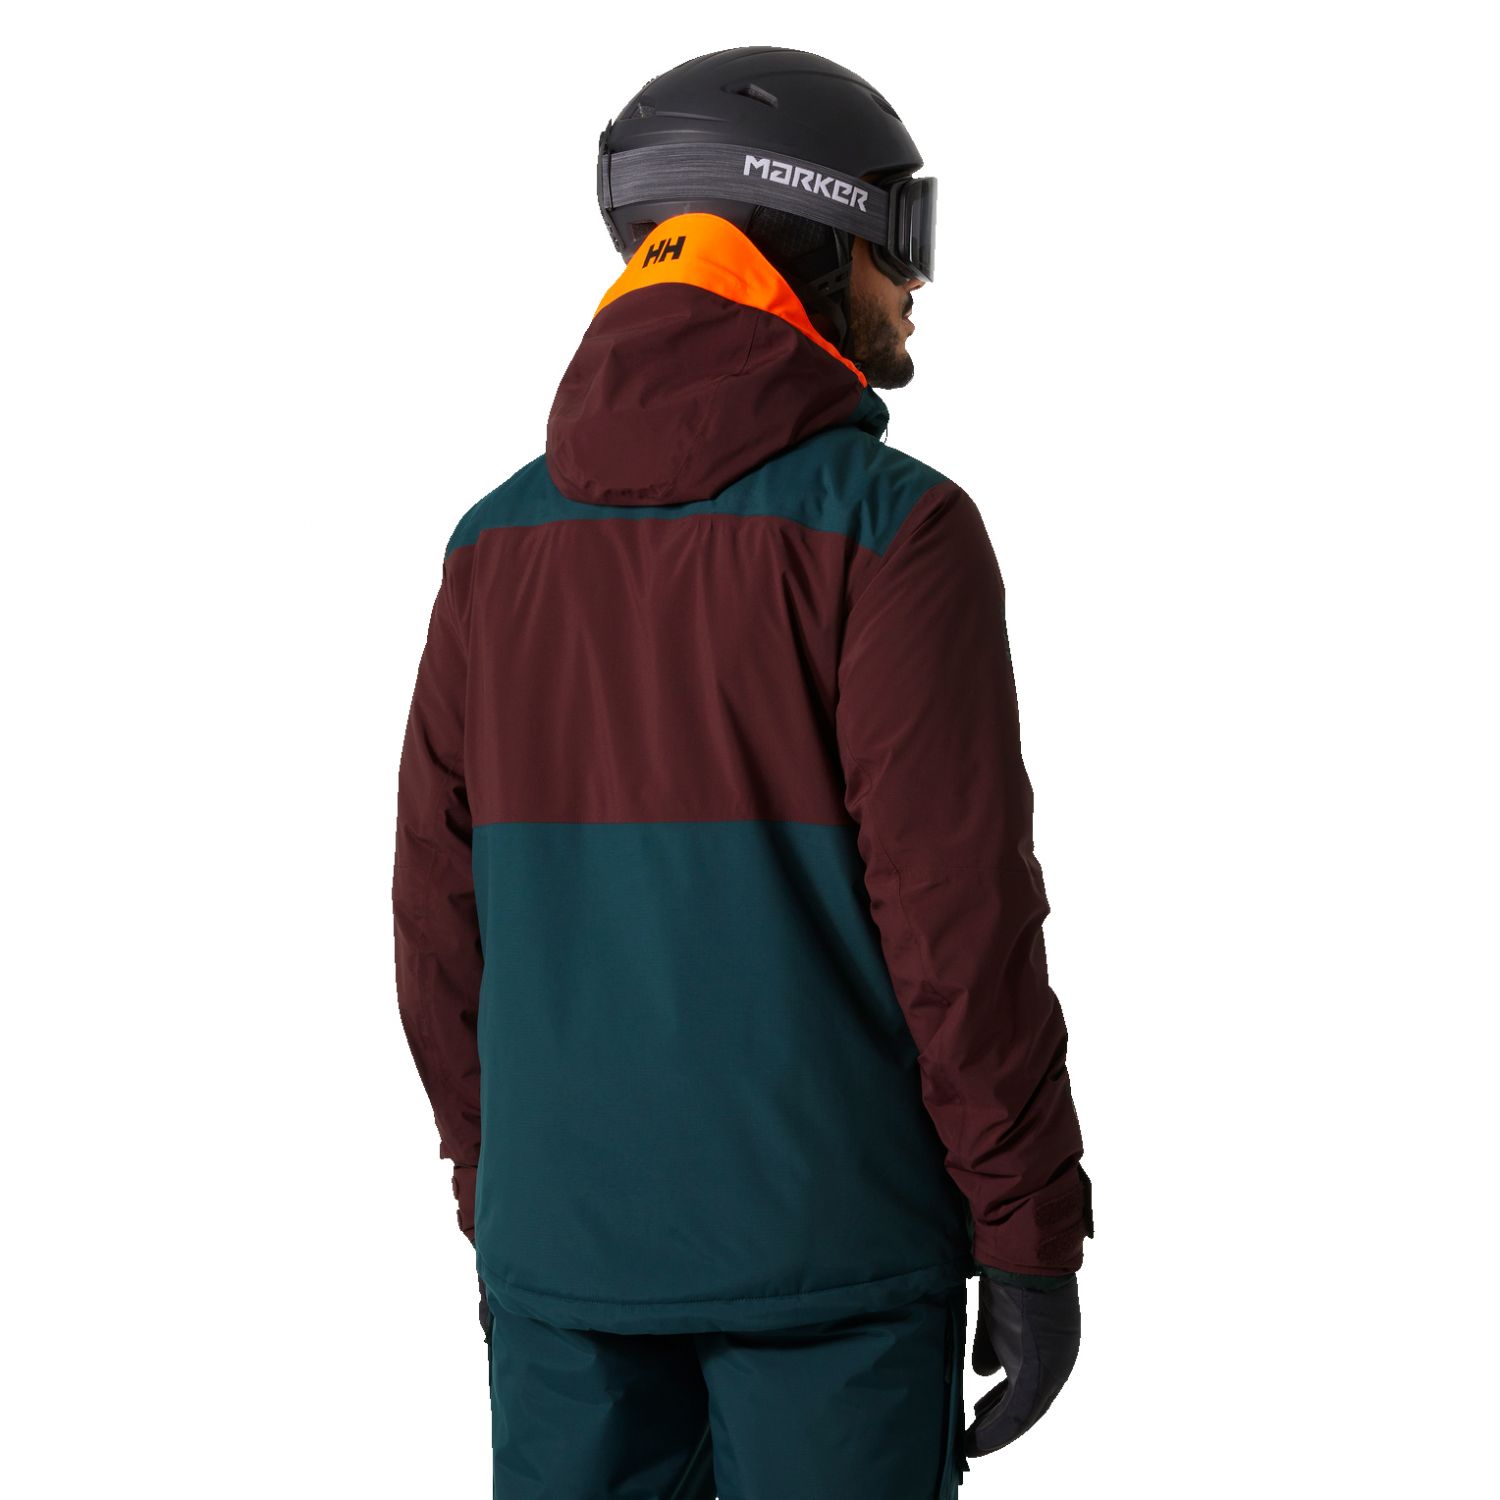 Helly Hansen Powdreamer 2.0, manteau de ski, hommes, rouge foncé